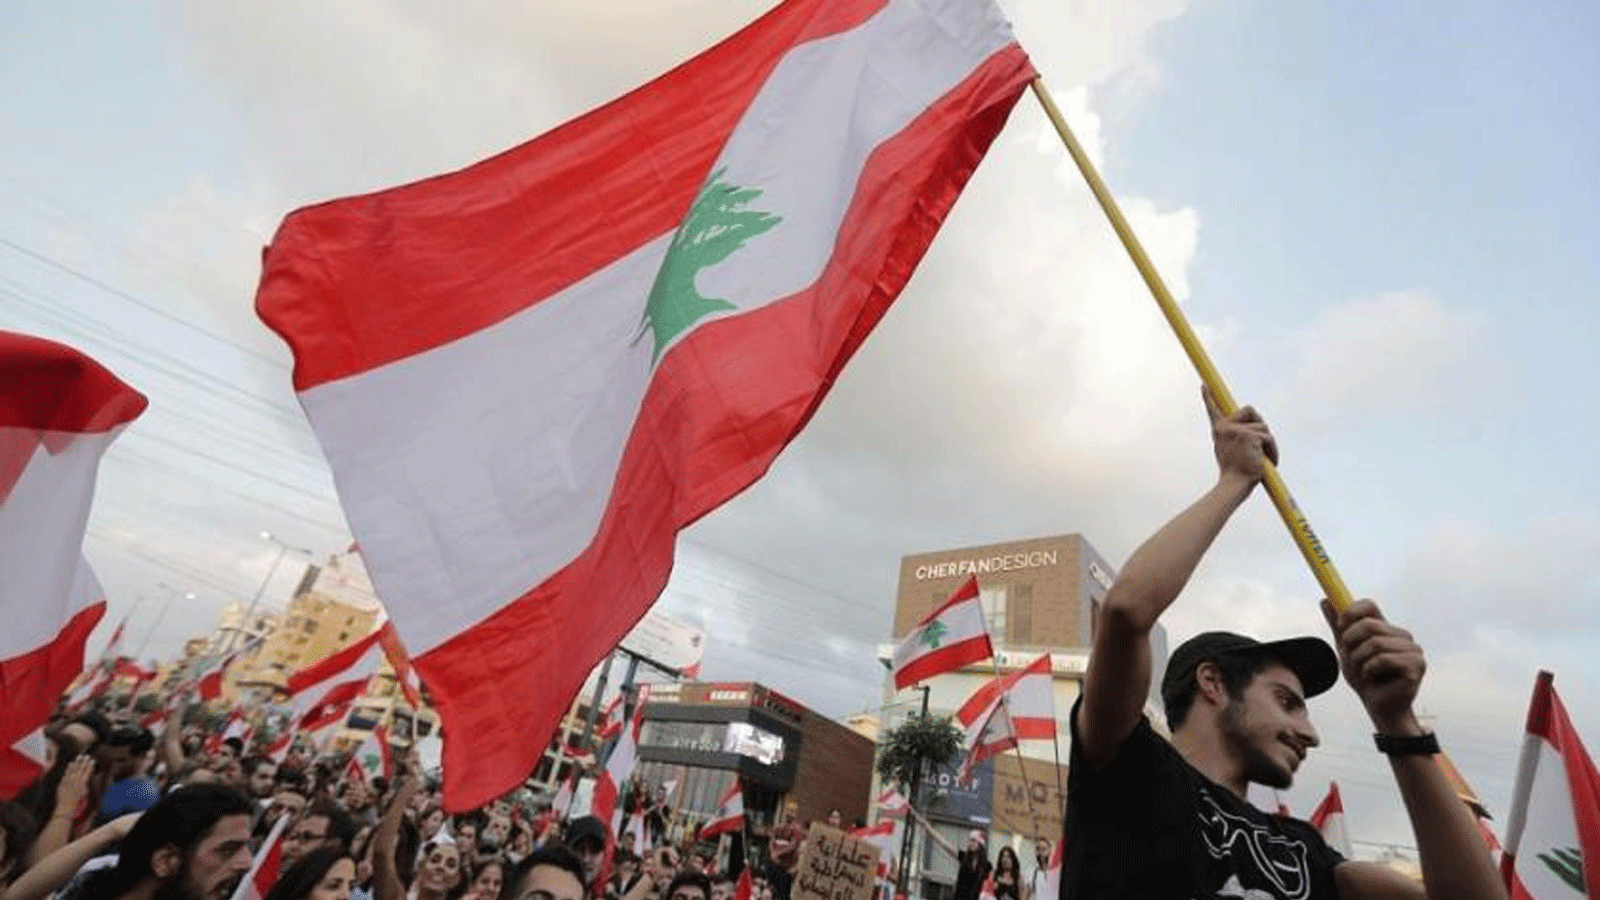 متظاهرون لبنانيون يرفعون الأعلام الوطنية على طريق سريع يربط بيروت بشمال لبنان، في منطقة زوق مكايل. 19 تشرين الأول\ اكتوبر2019